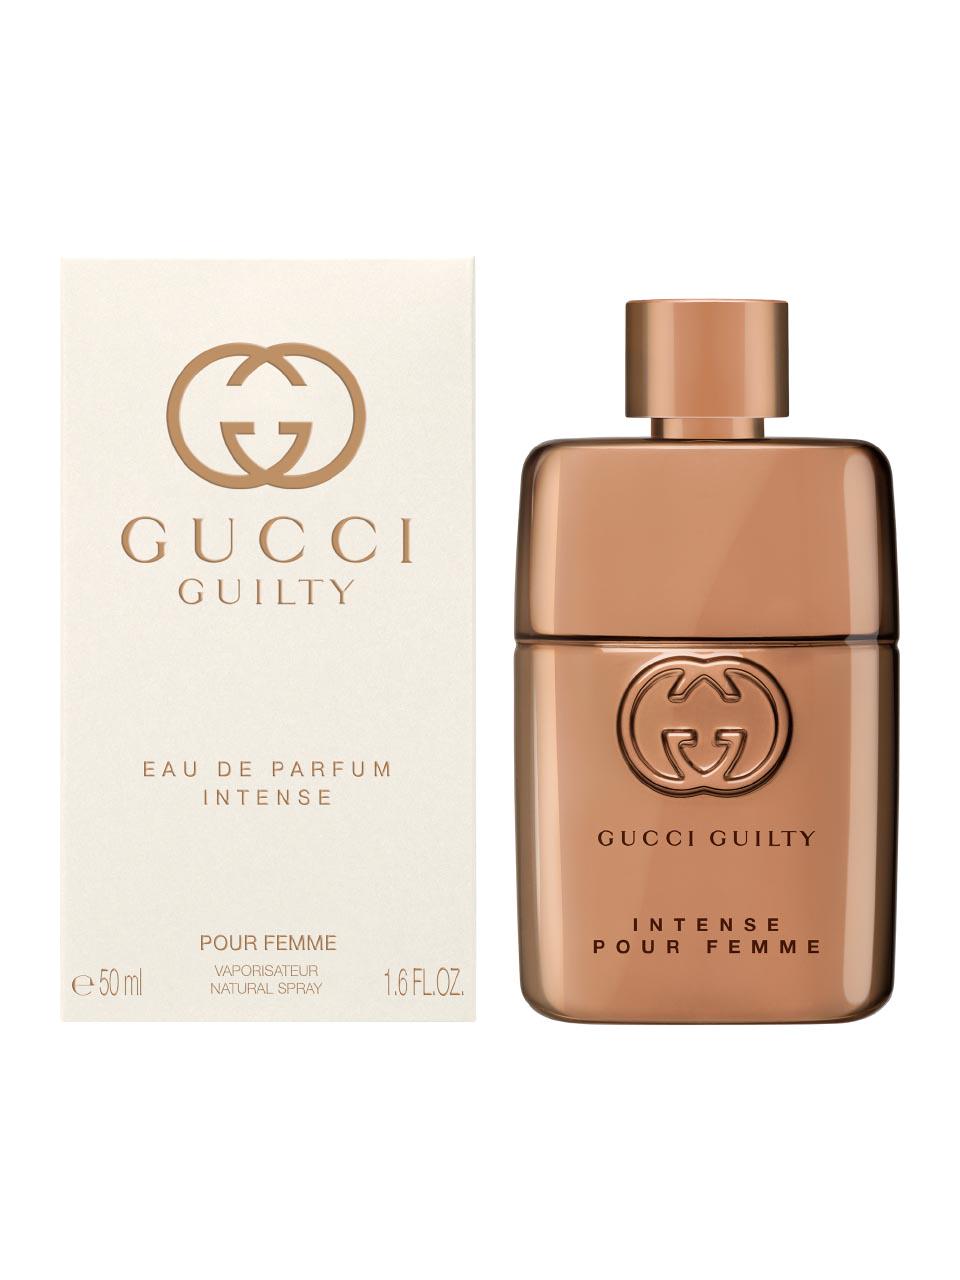 Gucci Guilty Pour Femme Eau de Parfum Intense 50 ml | Frankfurt Airport  Online Shopping